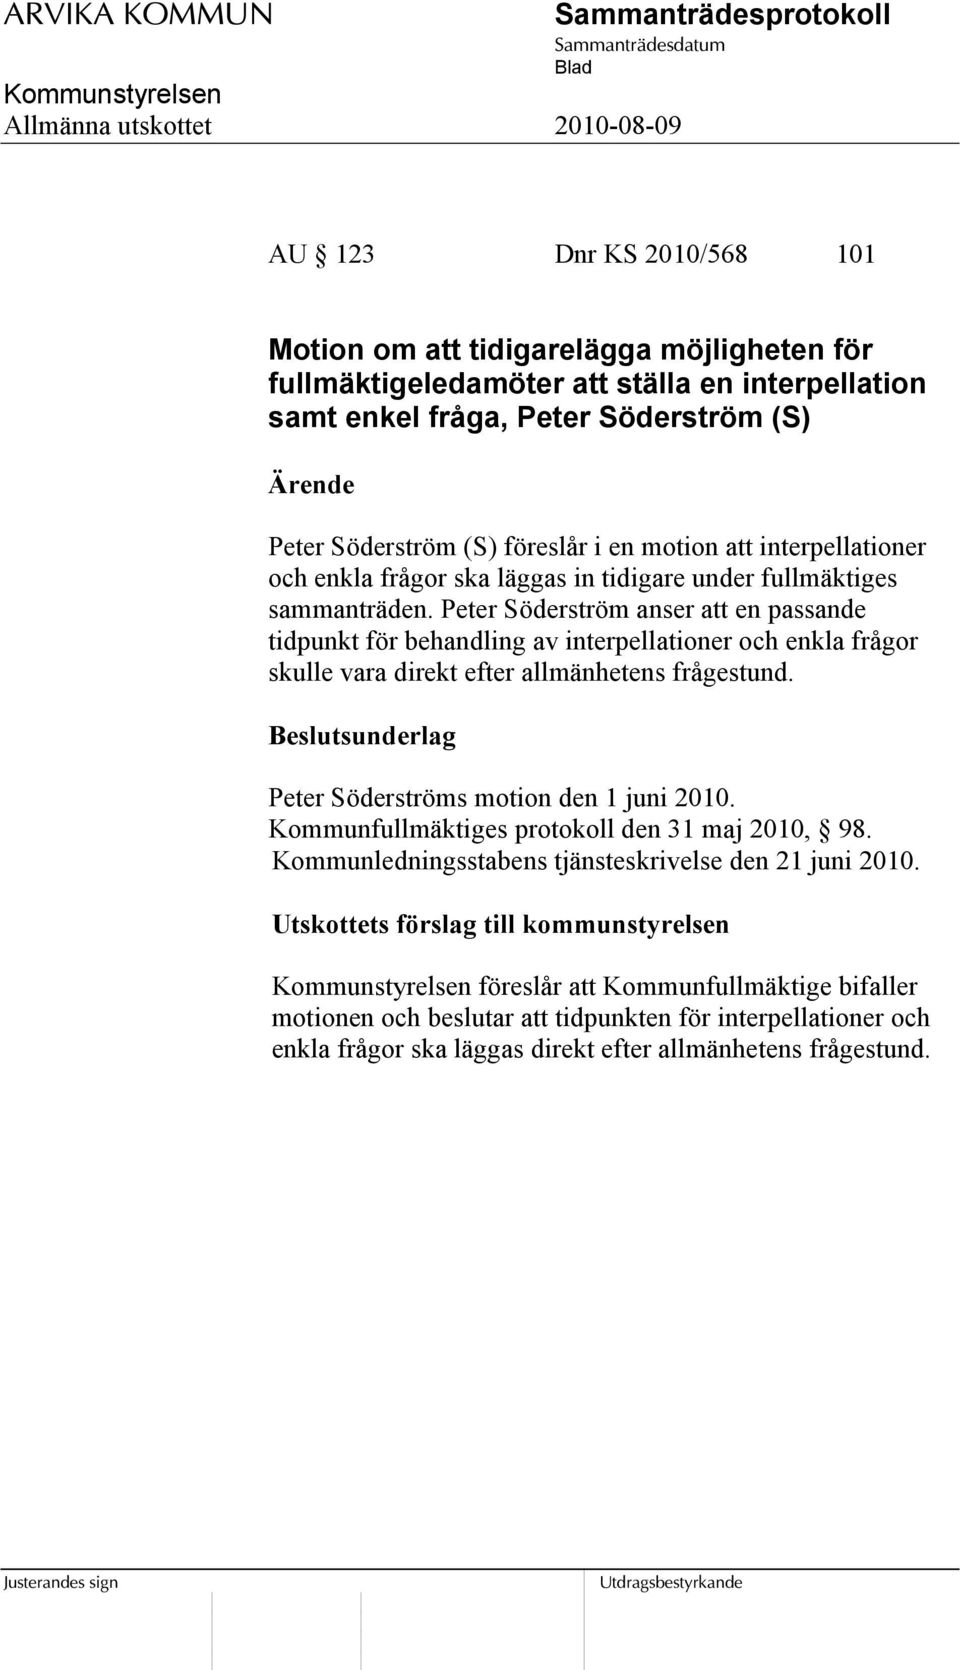 Peter Söderström anser att en passande tidpunkt för behandling av interpellationer och enkla frågor skulle vara direkt efter allmänhetens frågestund. Peter Söderströms motion den 1 juni 2010.